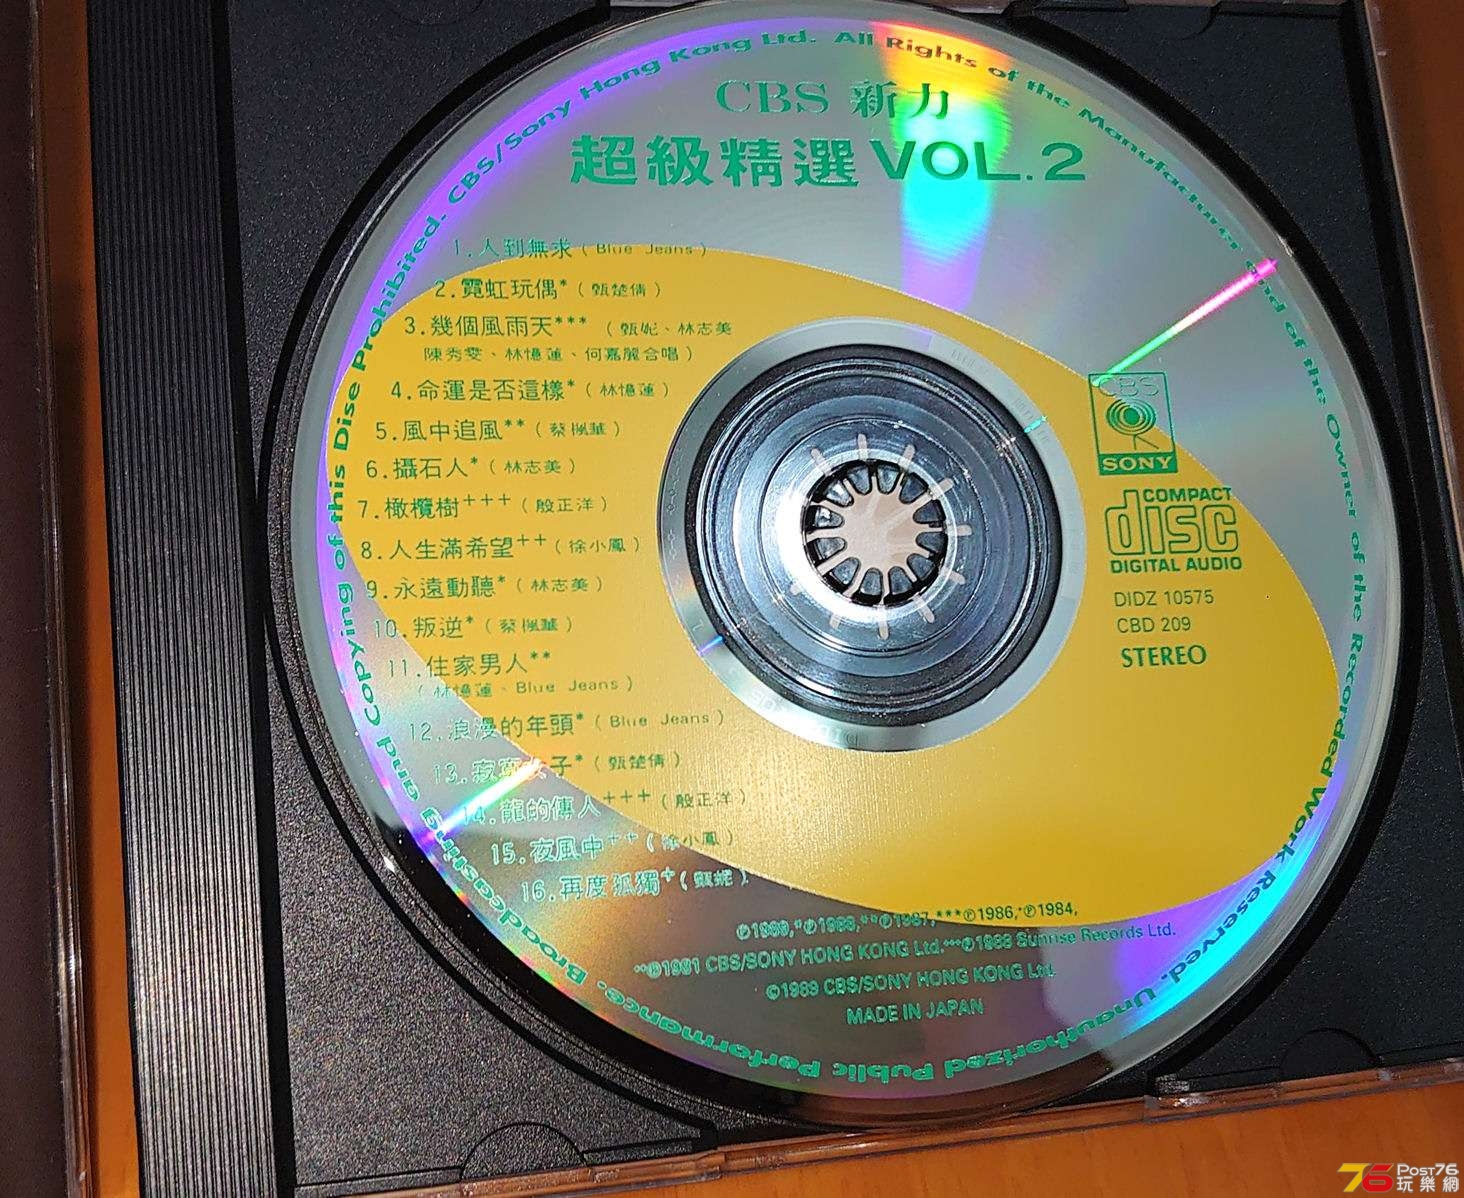 絕版CD唱片(不分中英日古典Jazz)齊分享- 唱片音樂/串流- 第96頁 